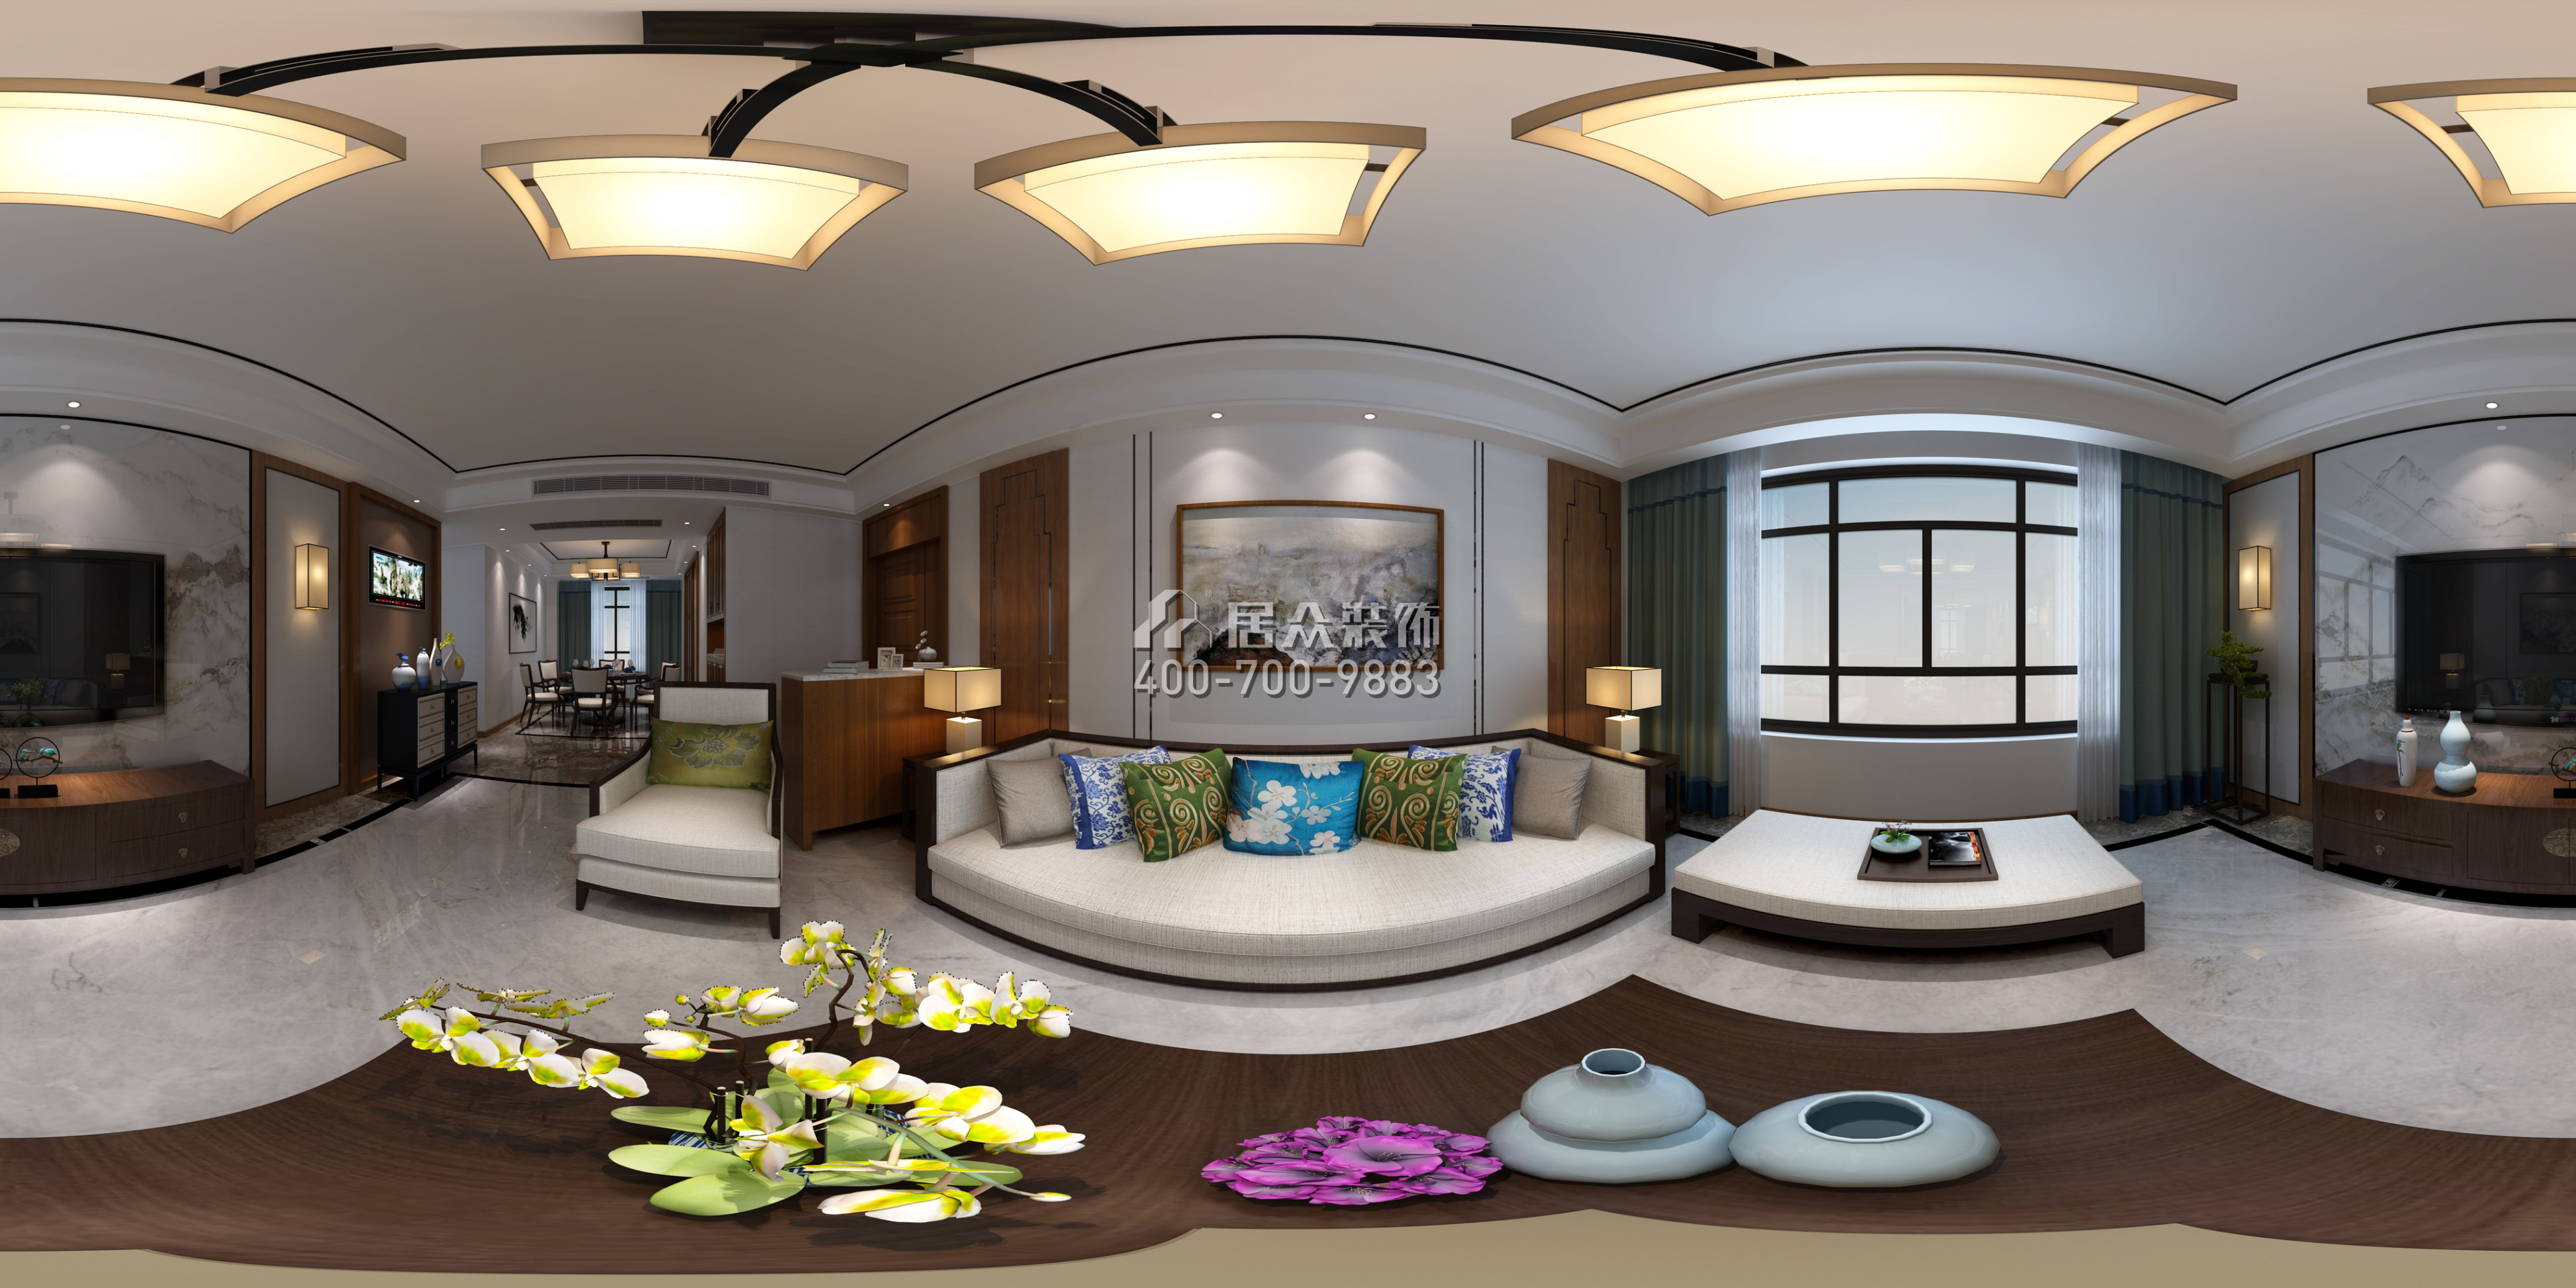 德景園150平方米中式風格平層戶型客廳裝修效果圖